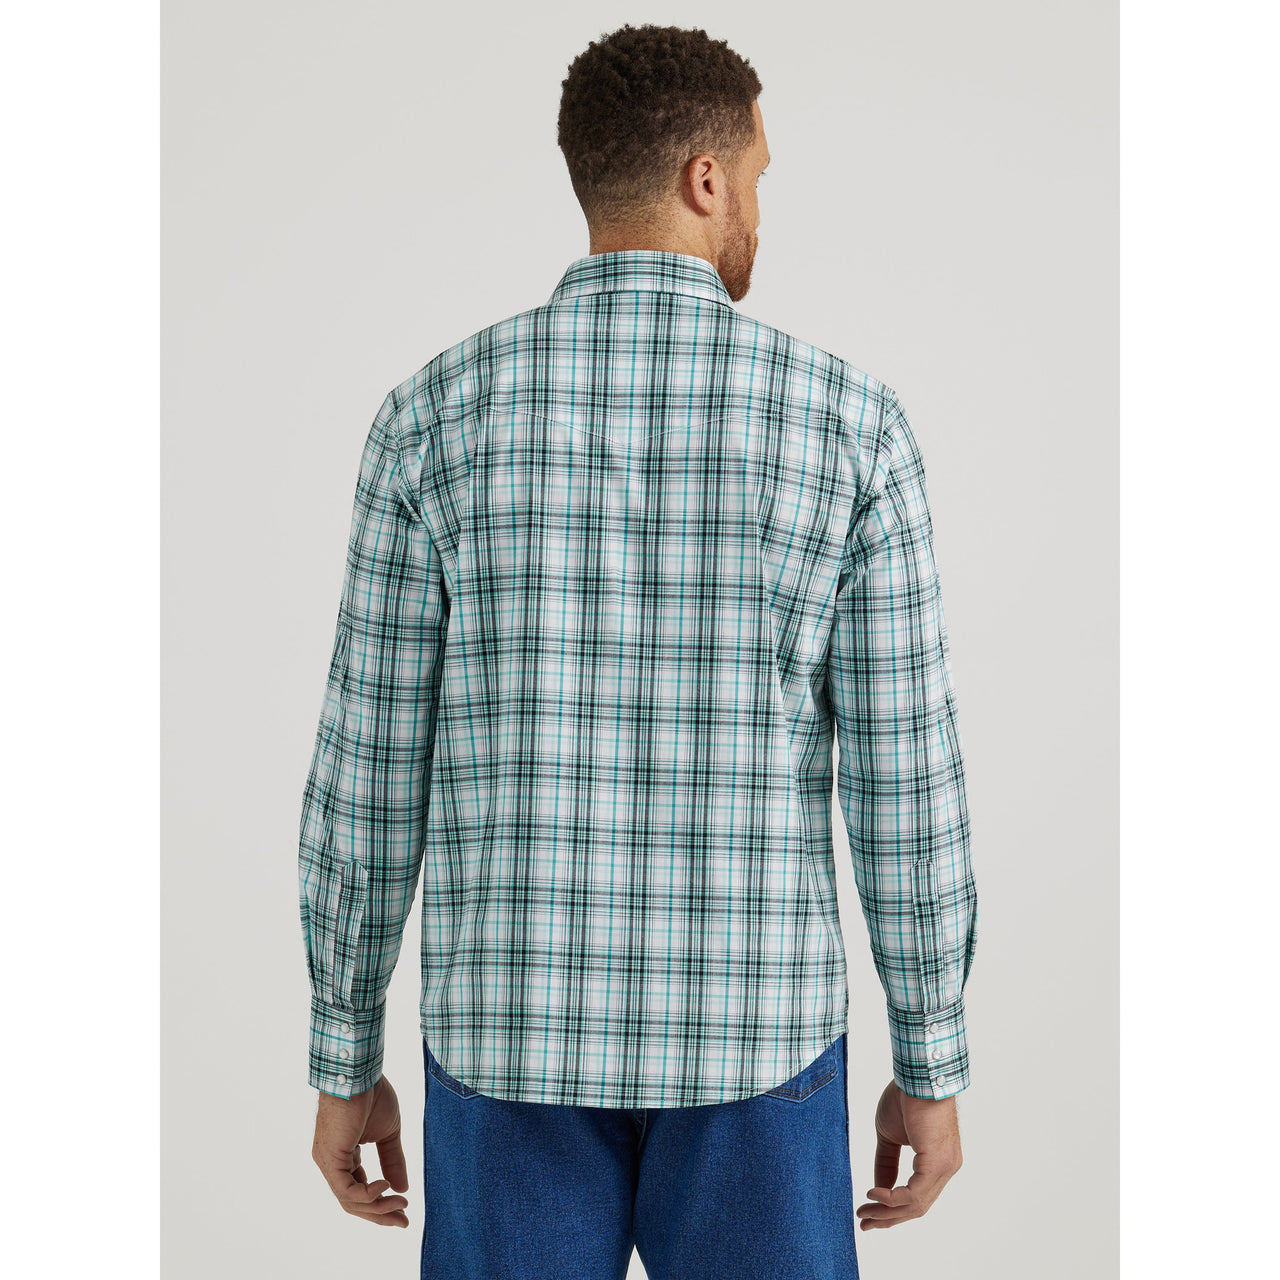 Wrangler Men's Wrinkle Resist Long Sleeve Plaid Shirt - Green